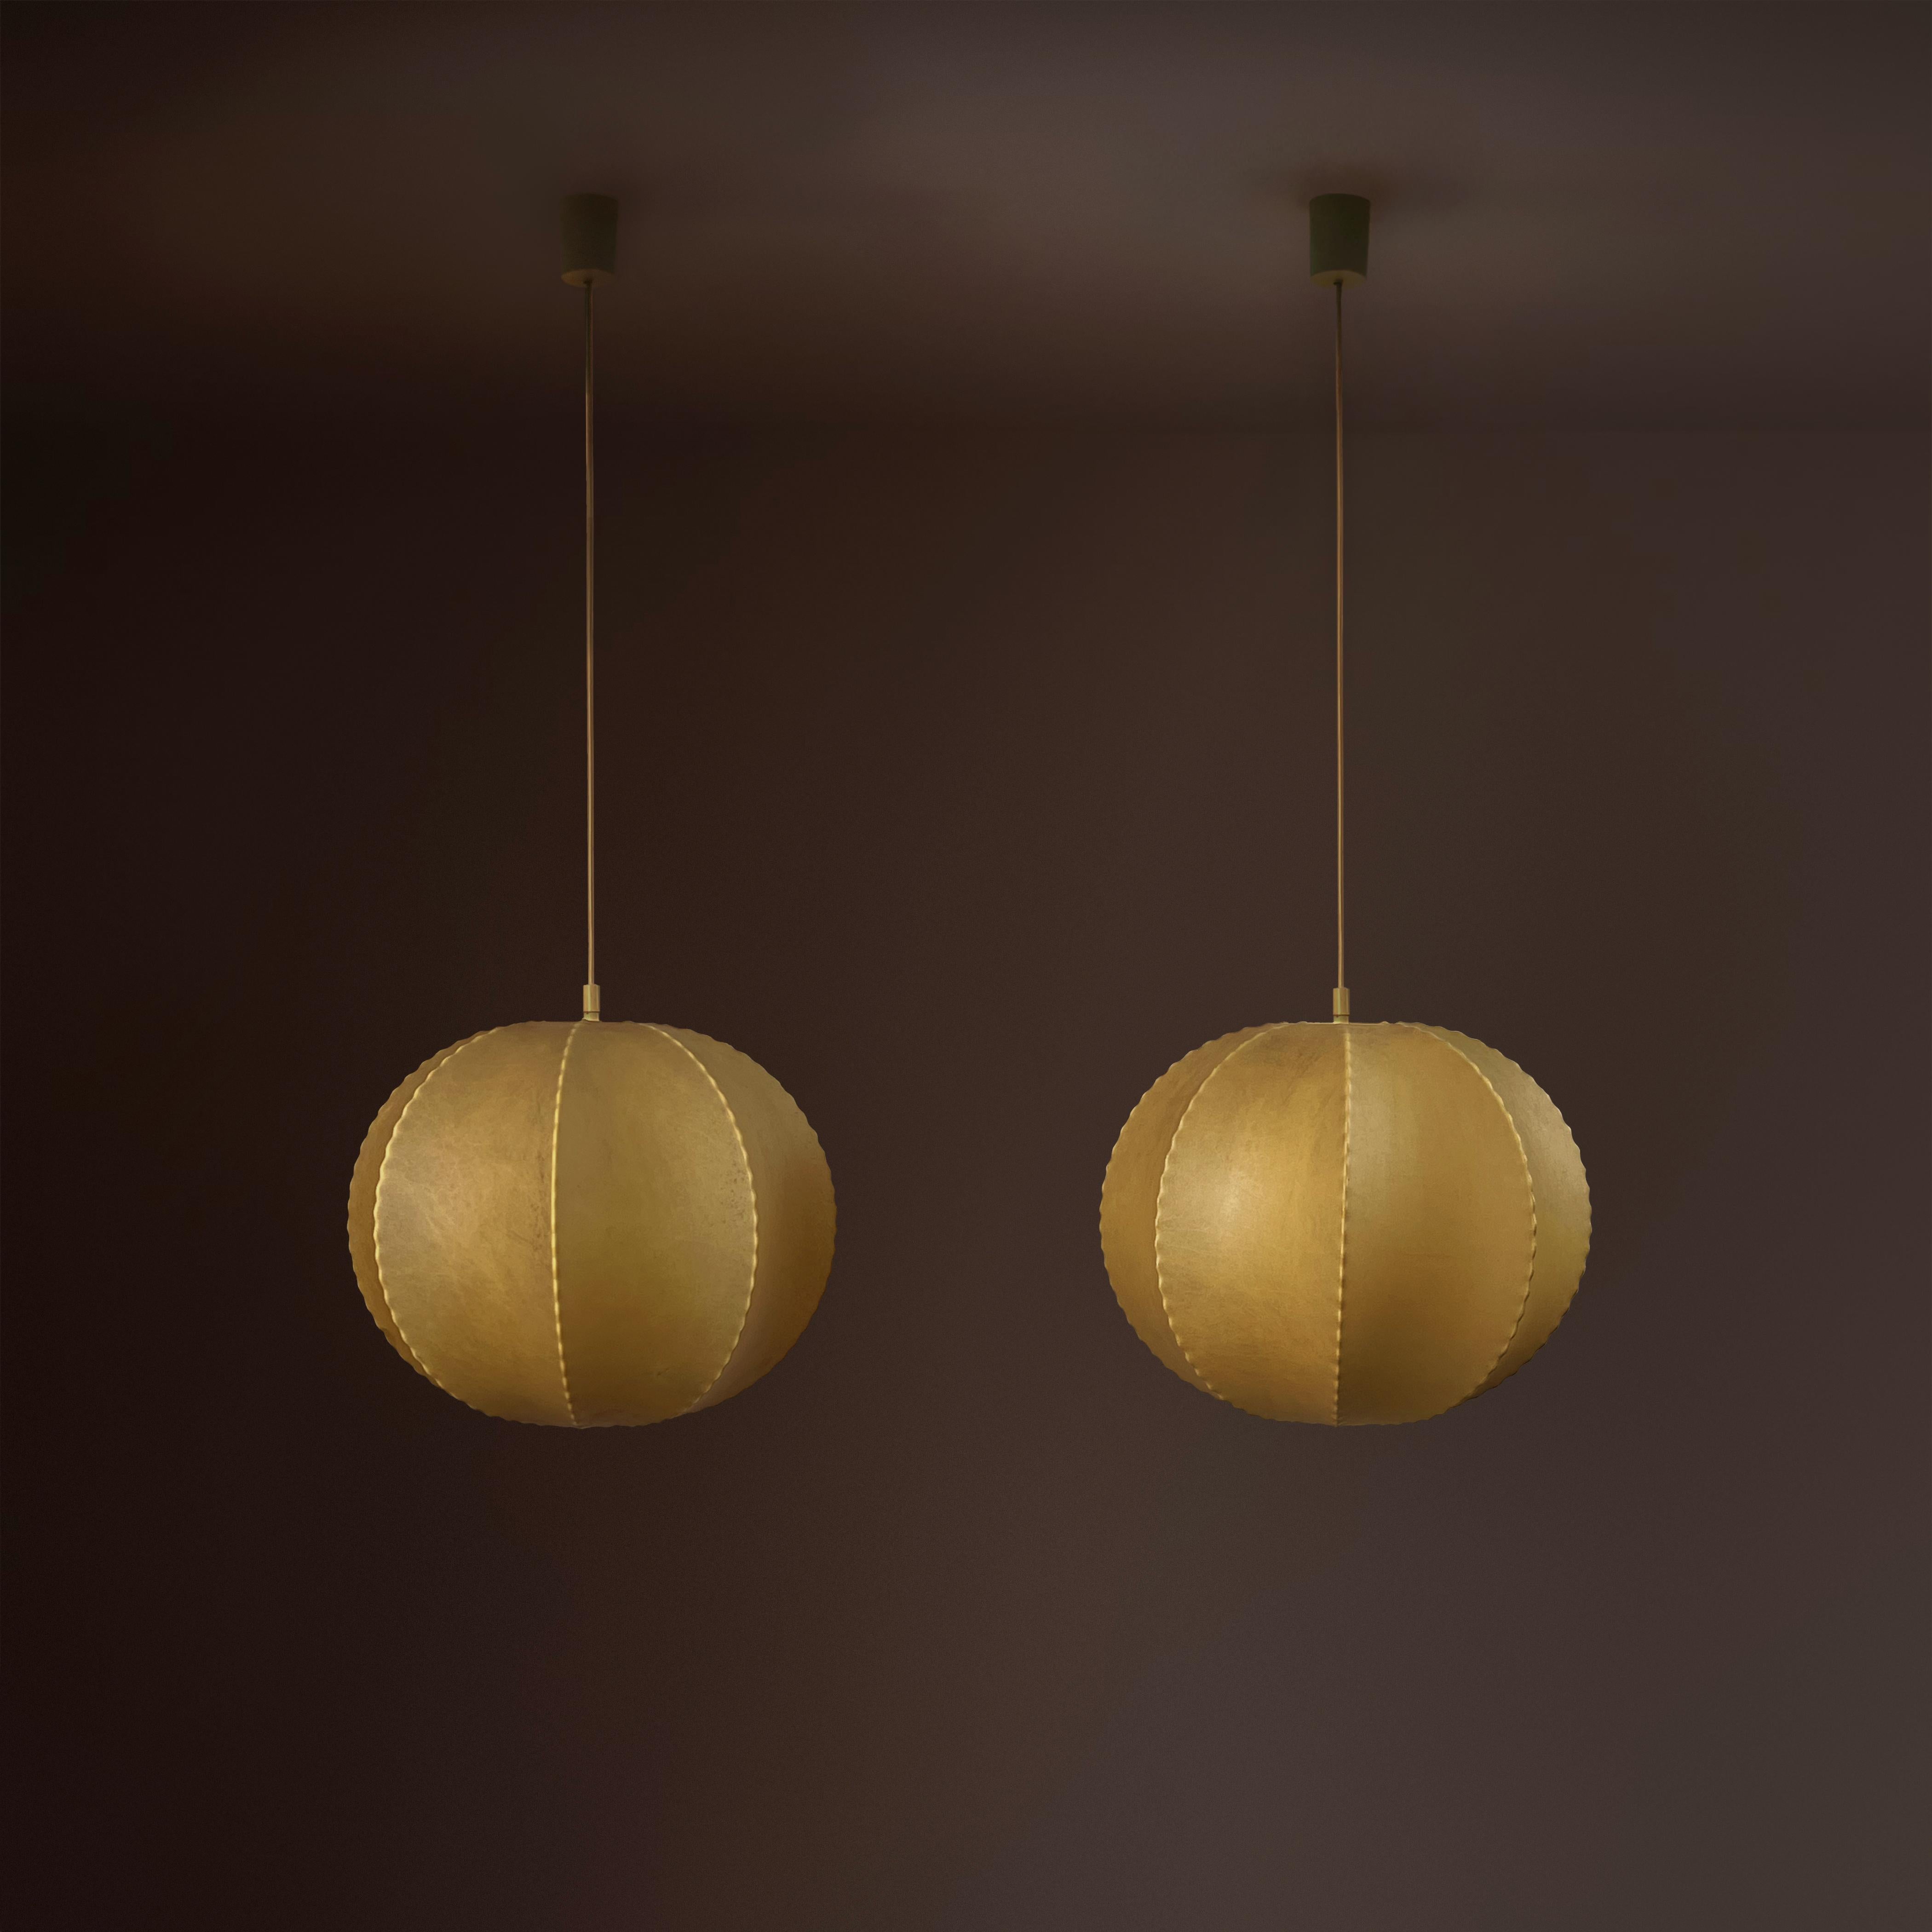 Unter den verschiedenen Kokon-Deckenlampen in unserer Sammlung sind diese beiden kugelförmigen, Friedel Wauer zugeschriebenen und in Deutschland hergestellten Lampen wirklich außergewöhnlich. 

Mit einem Durchmesser von jeweils ca. 30 cm haben sie